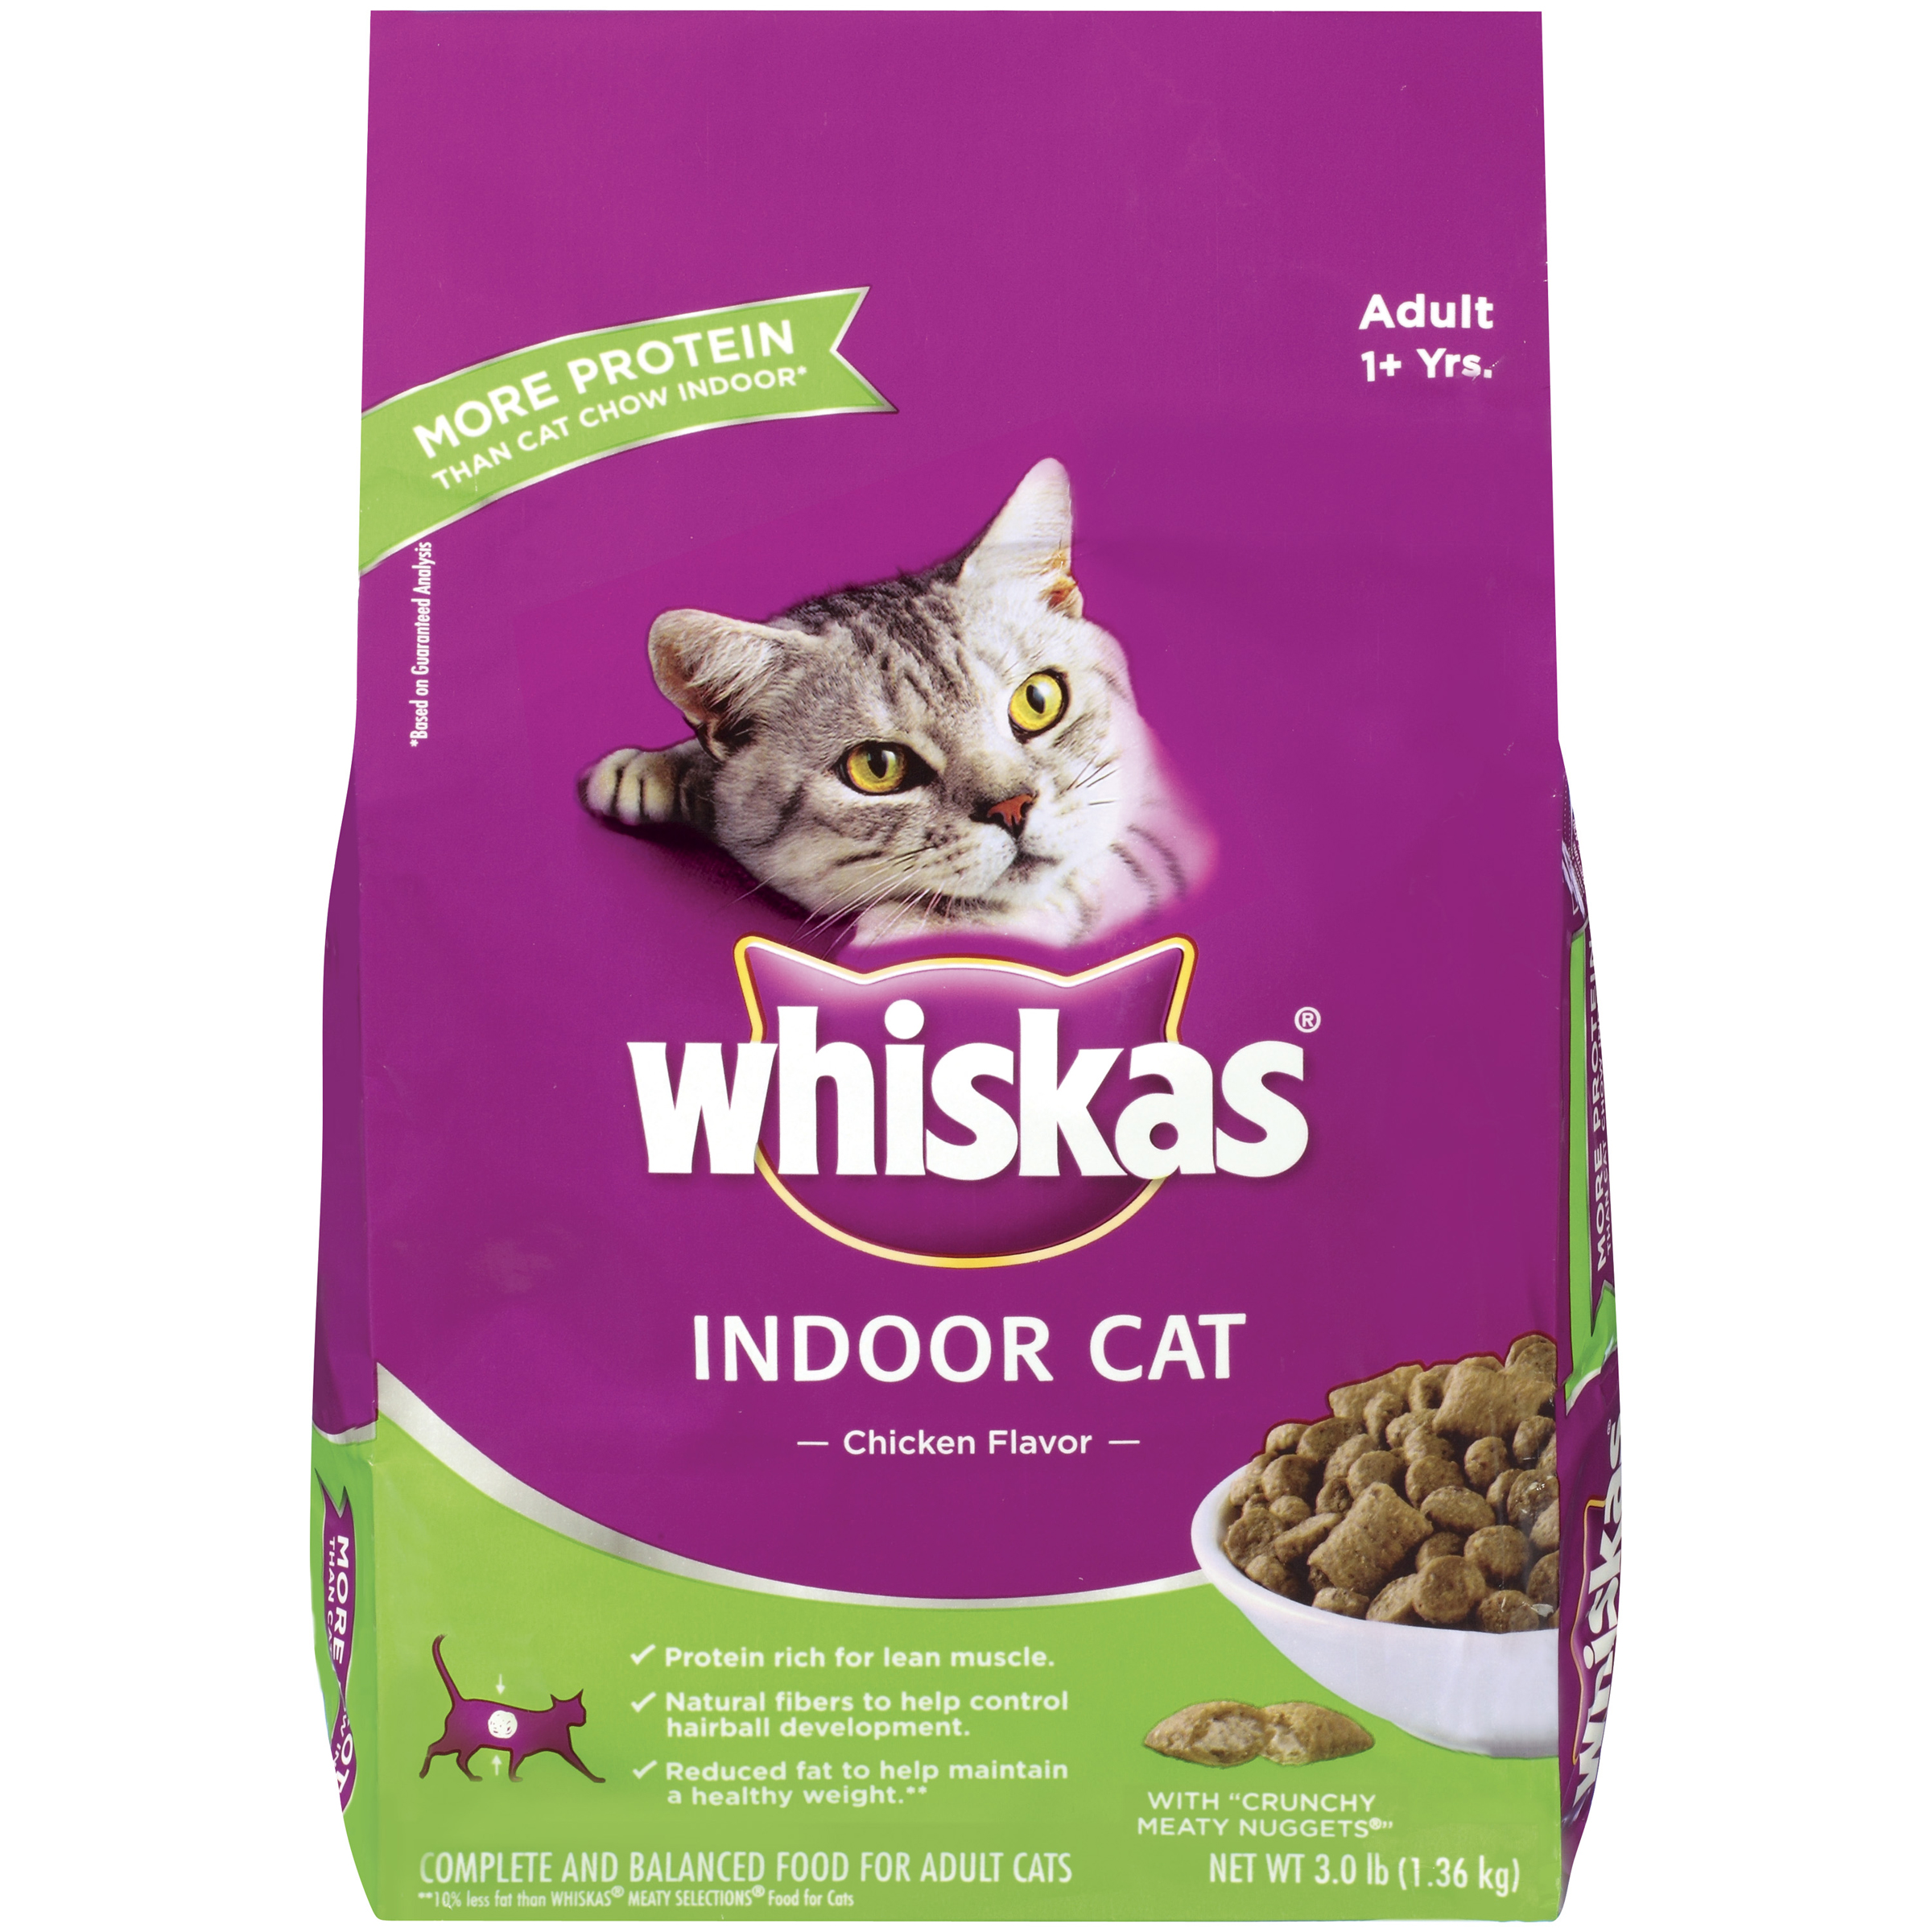 Whiskas Indoor Cat Chicken Flavor Adult 1+ Yrs Dry Cat Food Pet